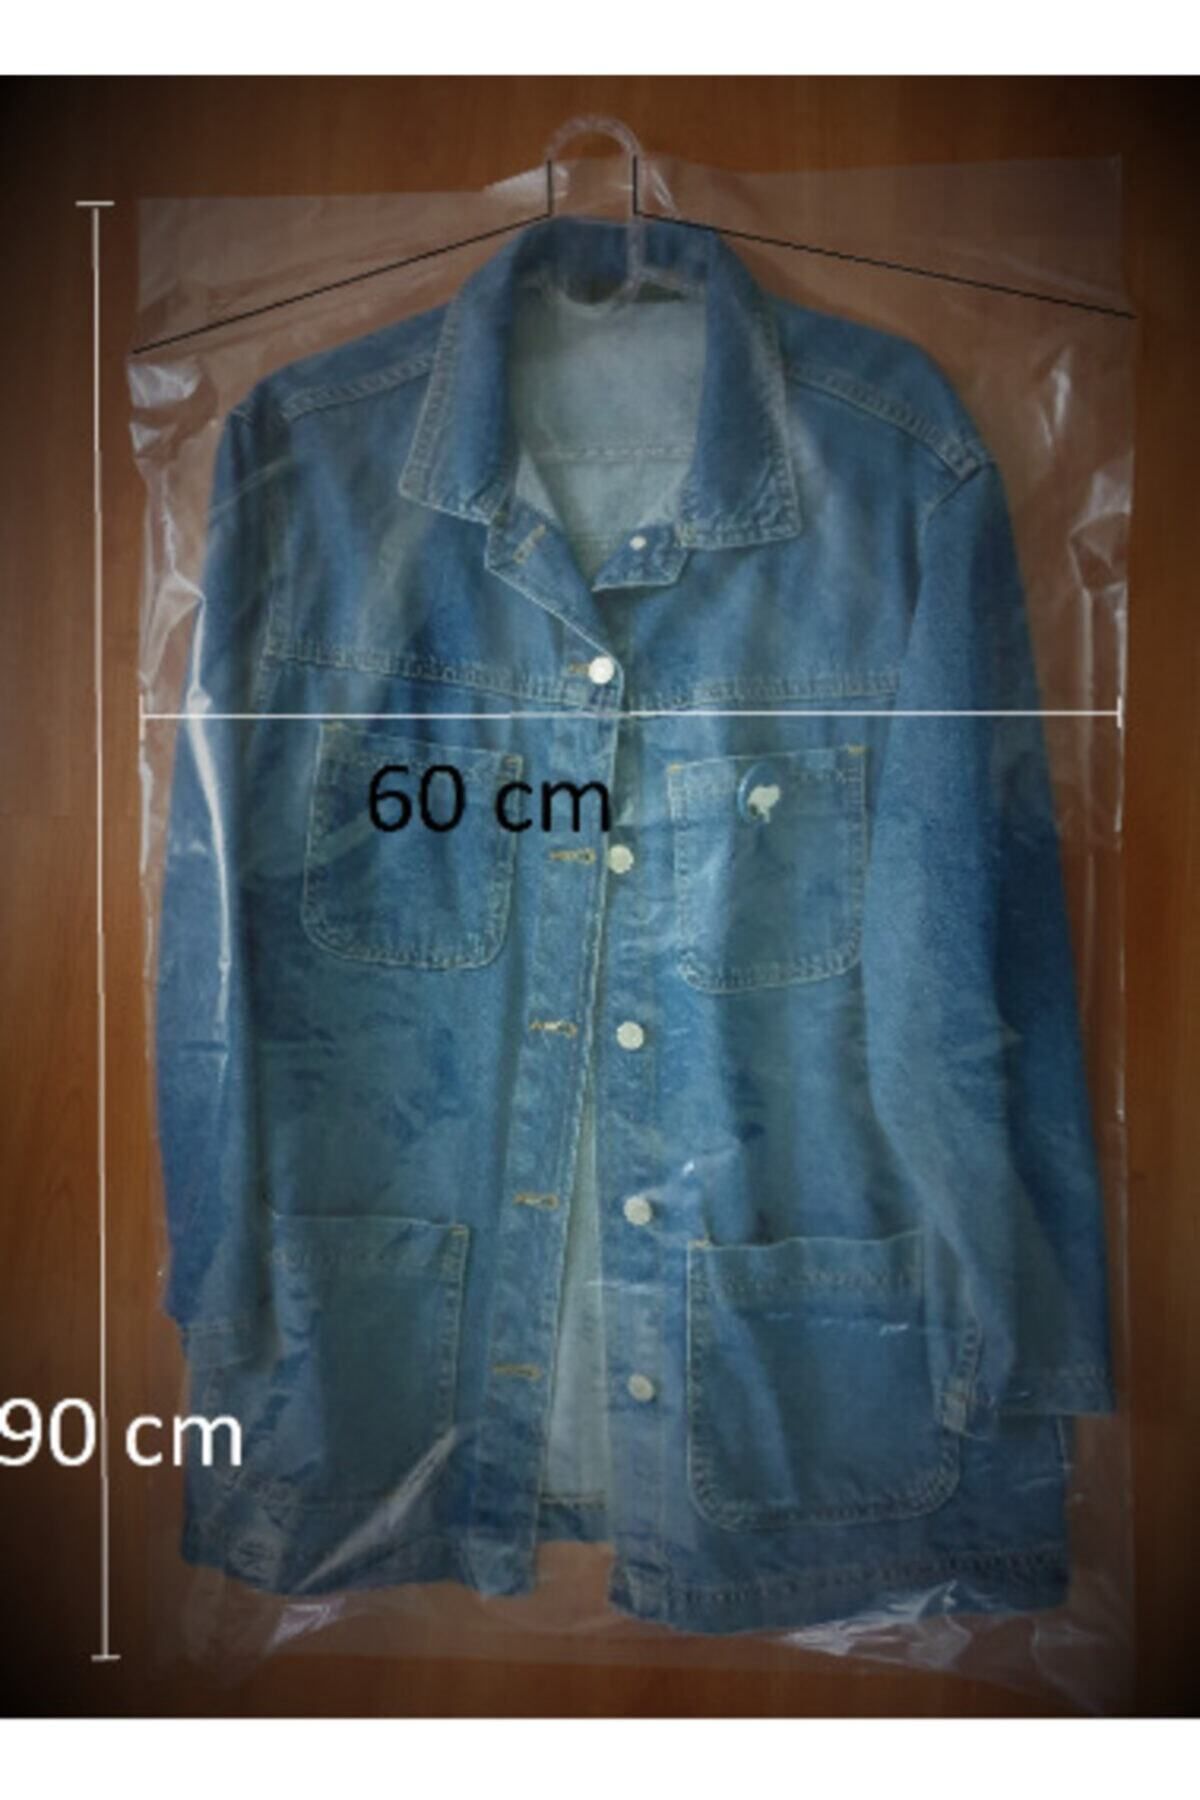 YİĞİT TİCARET Askılı Takım Elbise,ceket,kazak,tshirt Naylon Poşeti - Kıyafet Koruma Kılıfı - 60x90- 15 Adet